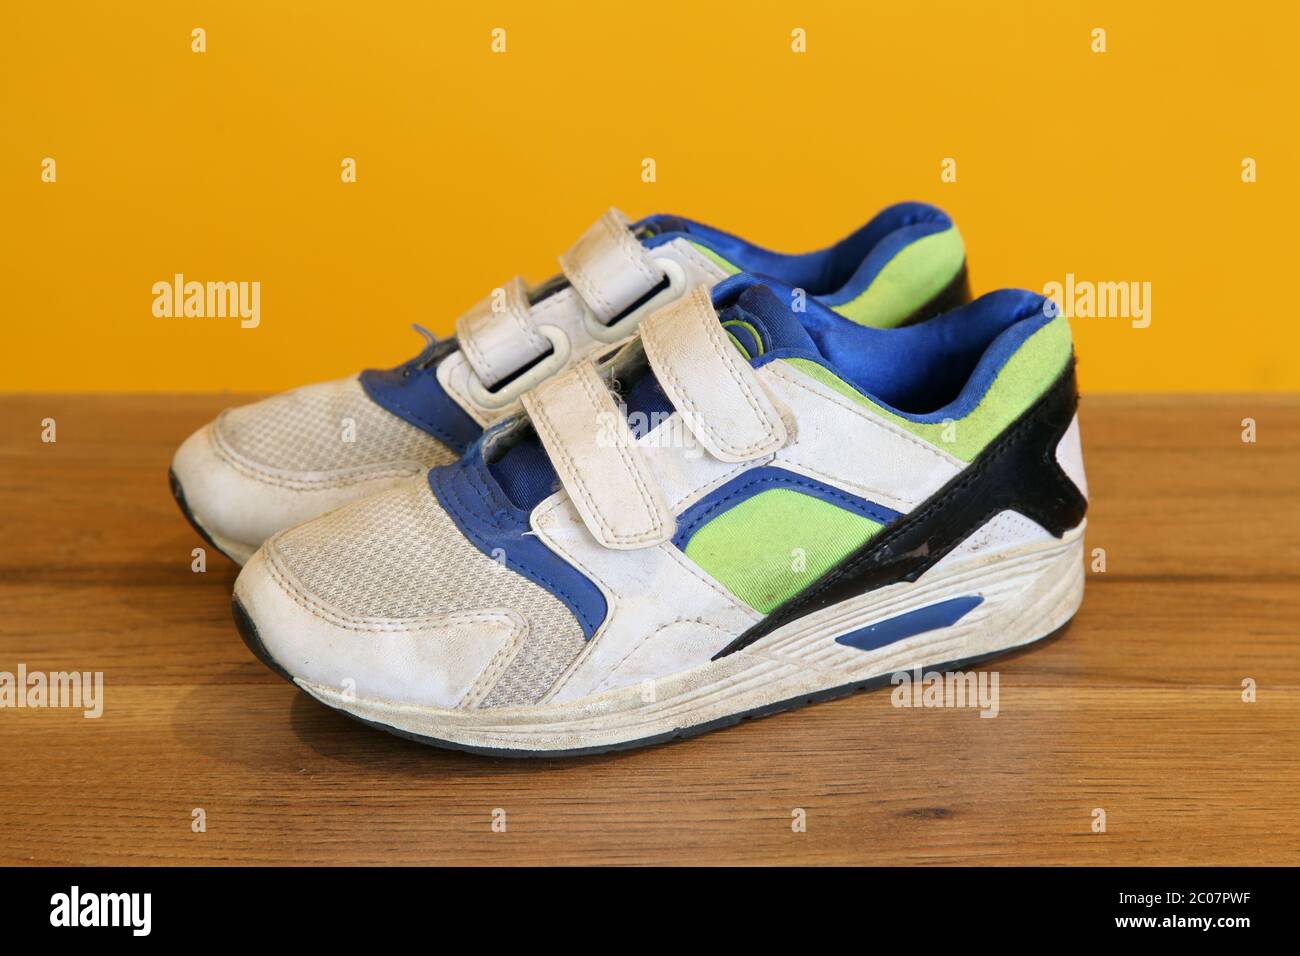 Chaussures de sport avec bande velcro blanche et sale MX2 avec des reflets bleus Banque D'Images